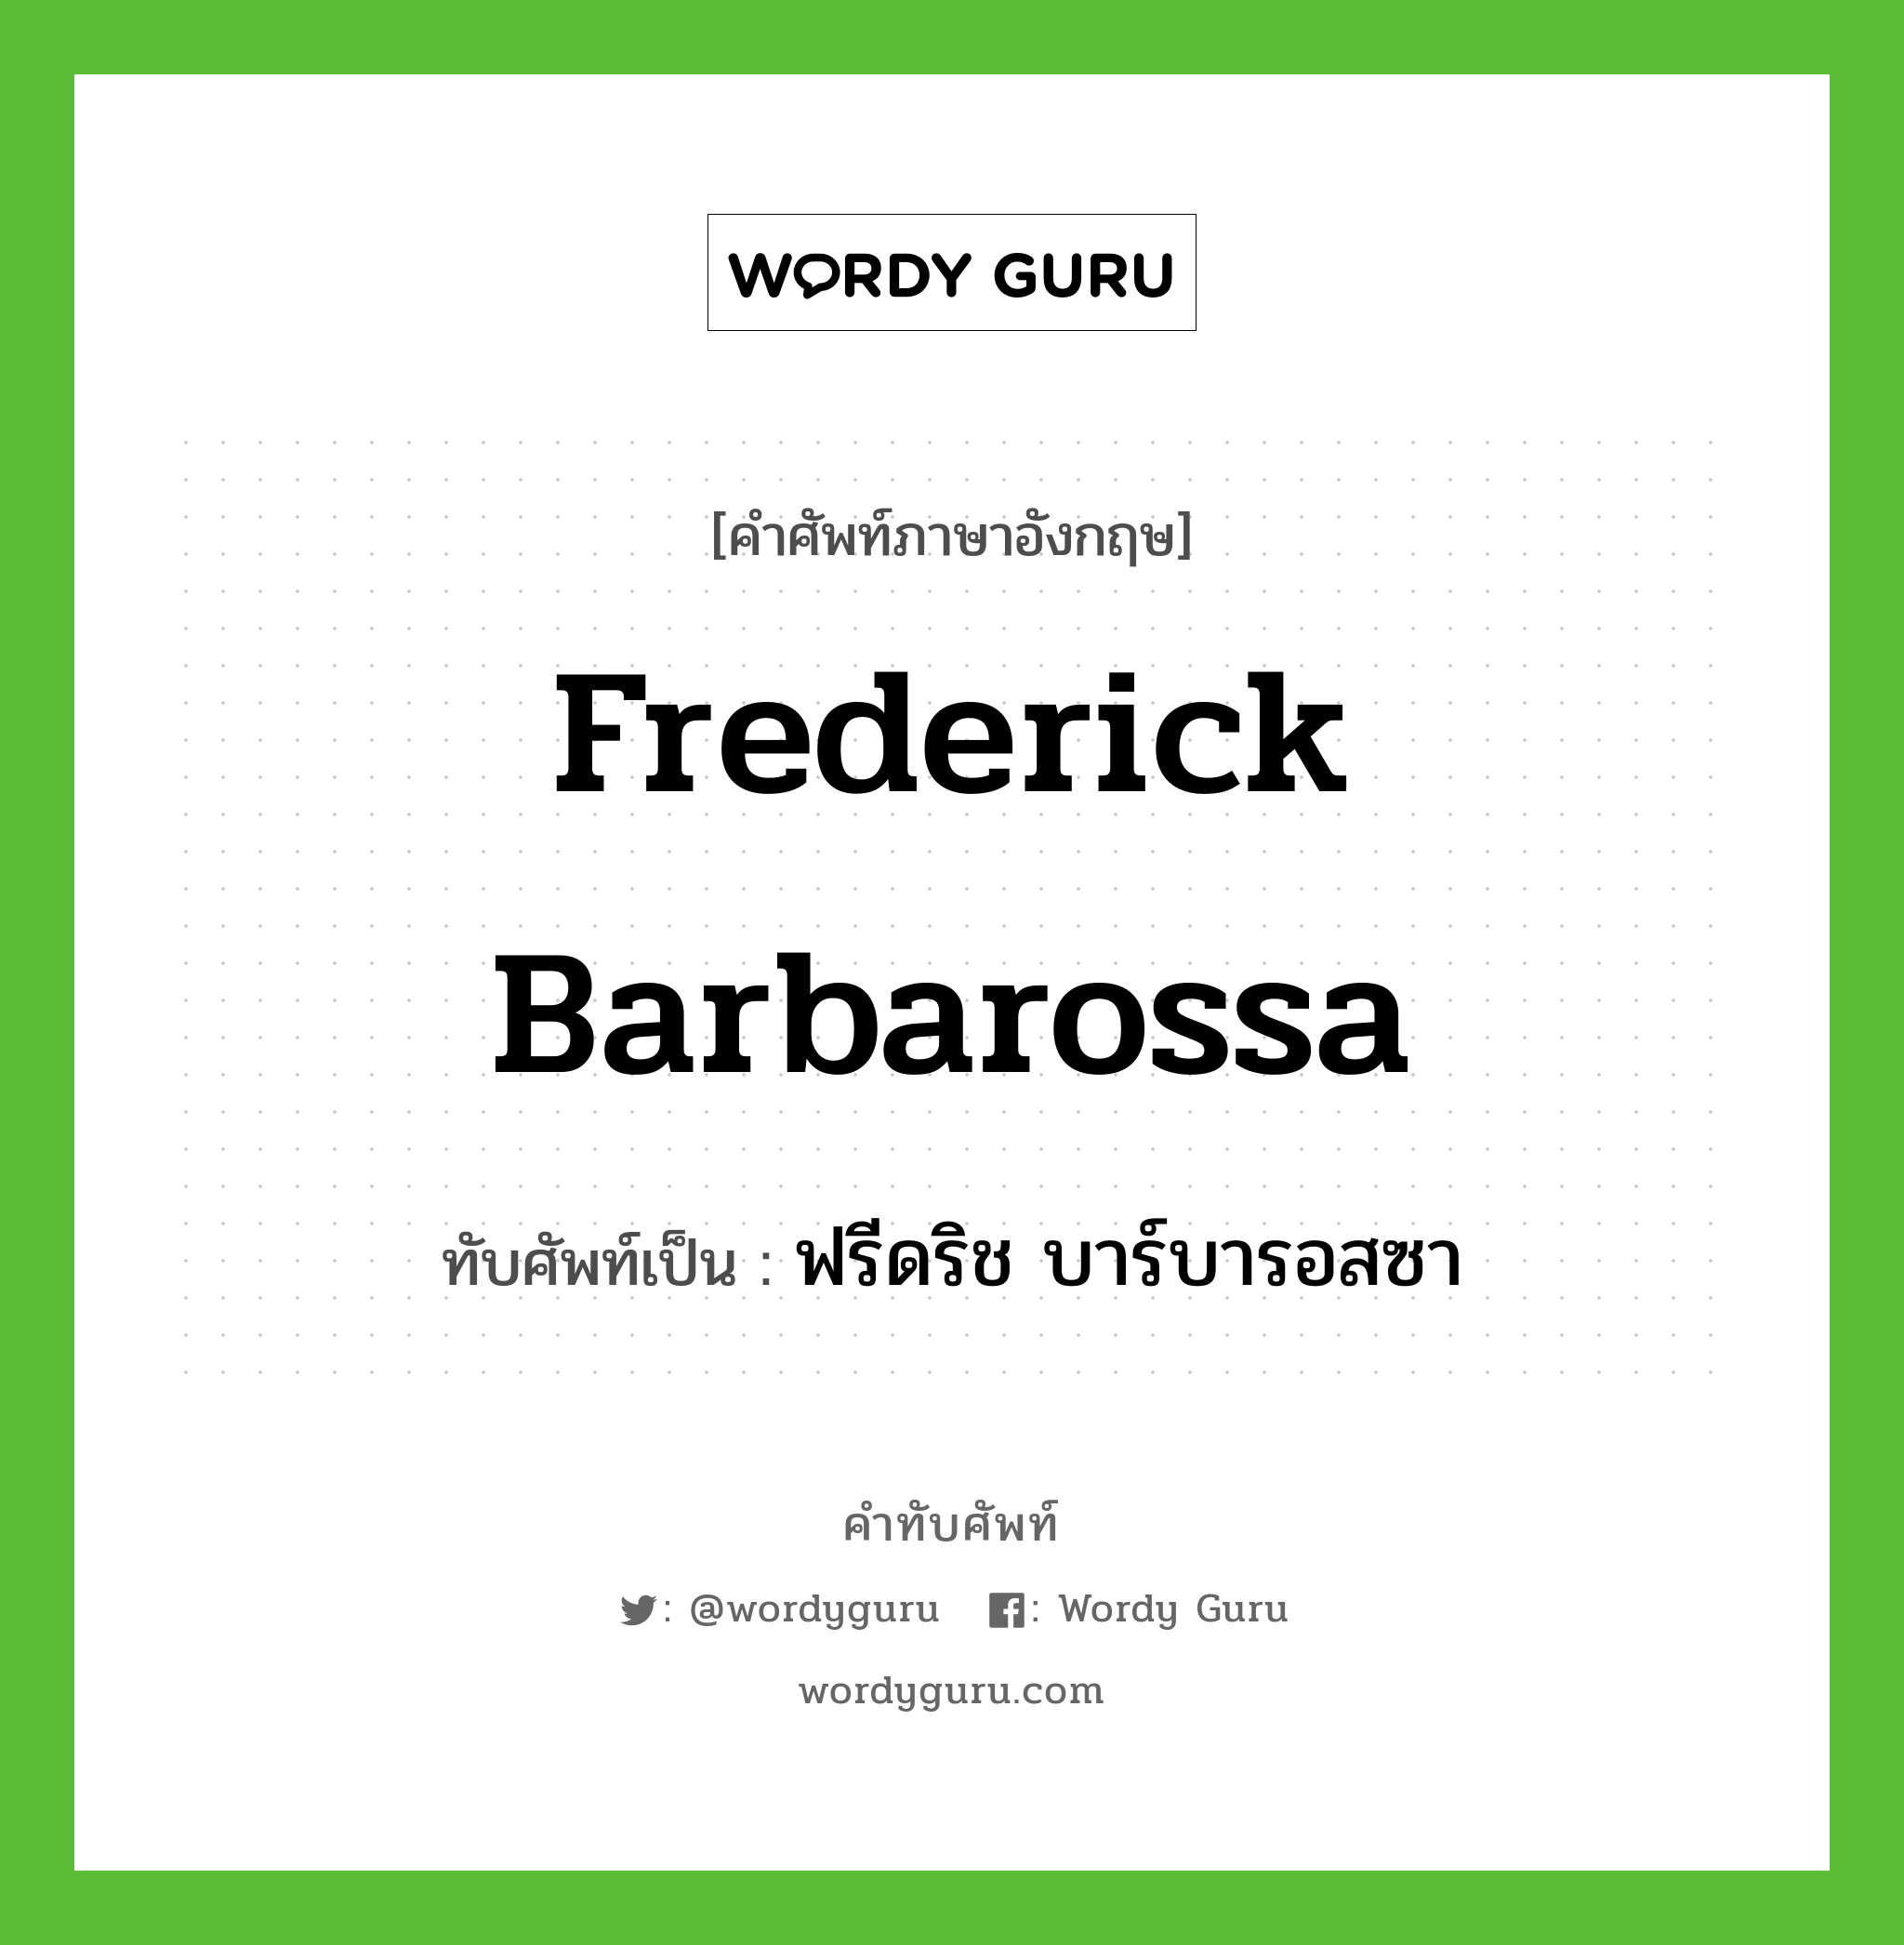 Frederick Barbarossa เขียนเป็นคำไทยว่าอะไร?, คำศัพท์ภาษาอังกฤษ Frederick Barbarossa ทับศัพท์เป็น ฟรีดริช บาร์บารอสซา